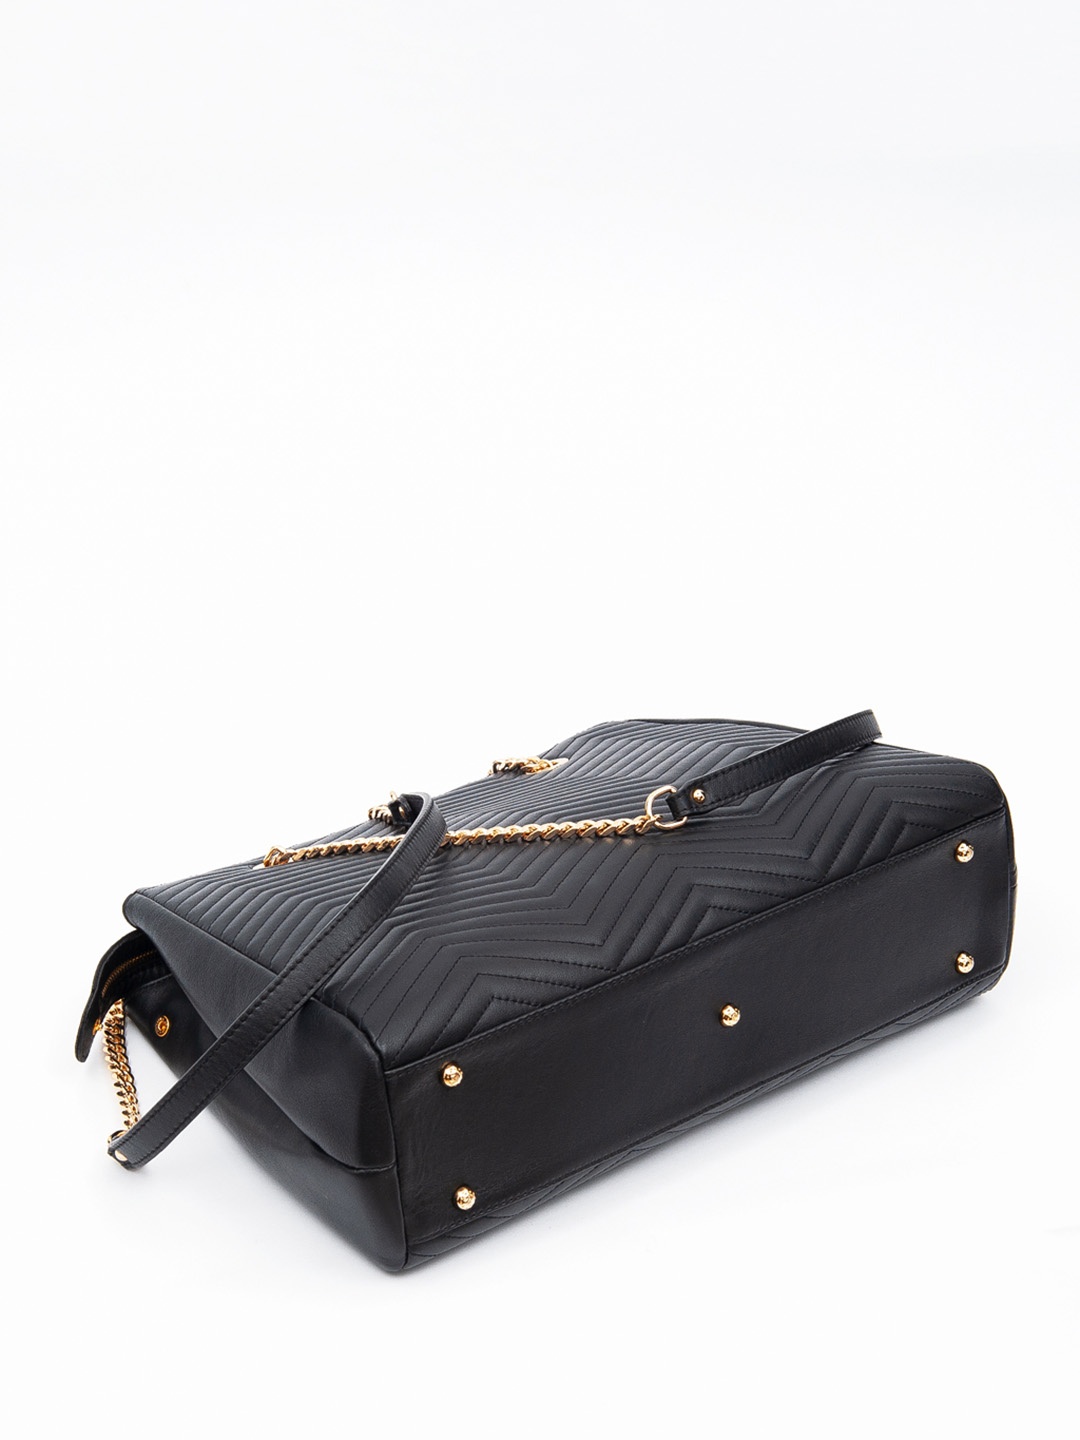 Фото Женская сумка-тоут из мягкой стеганой кожи с ручками на цепочках Классические сумки